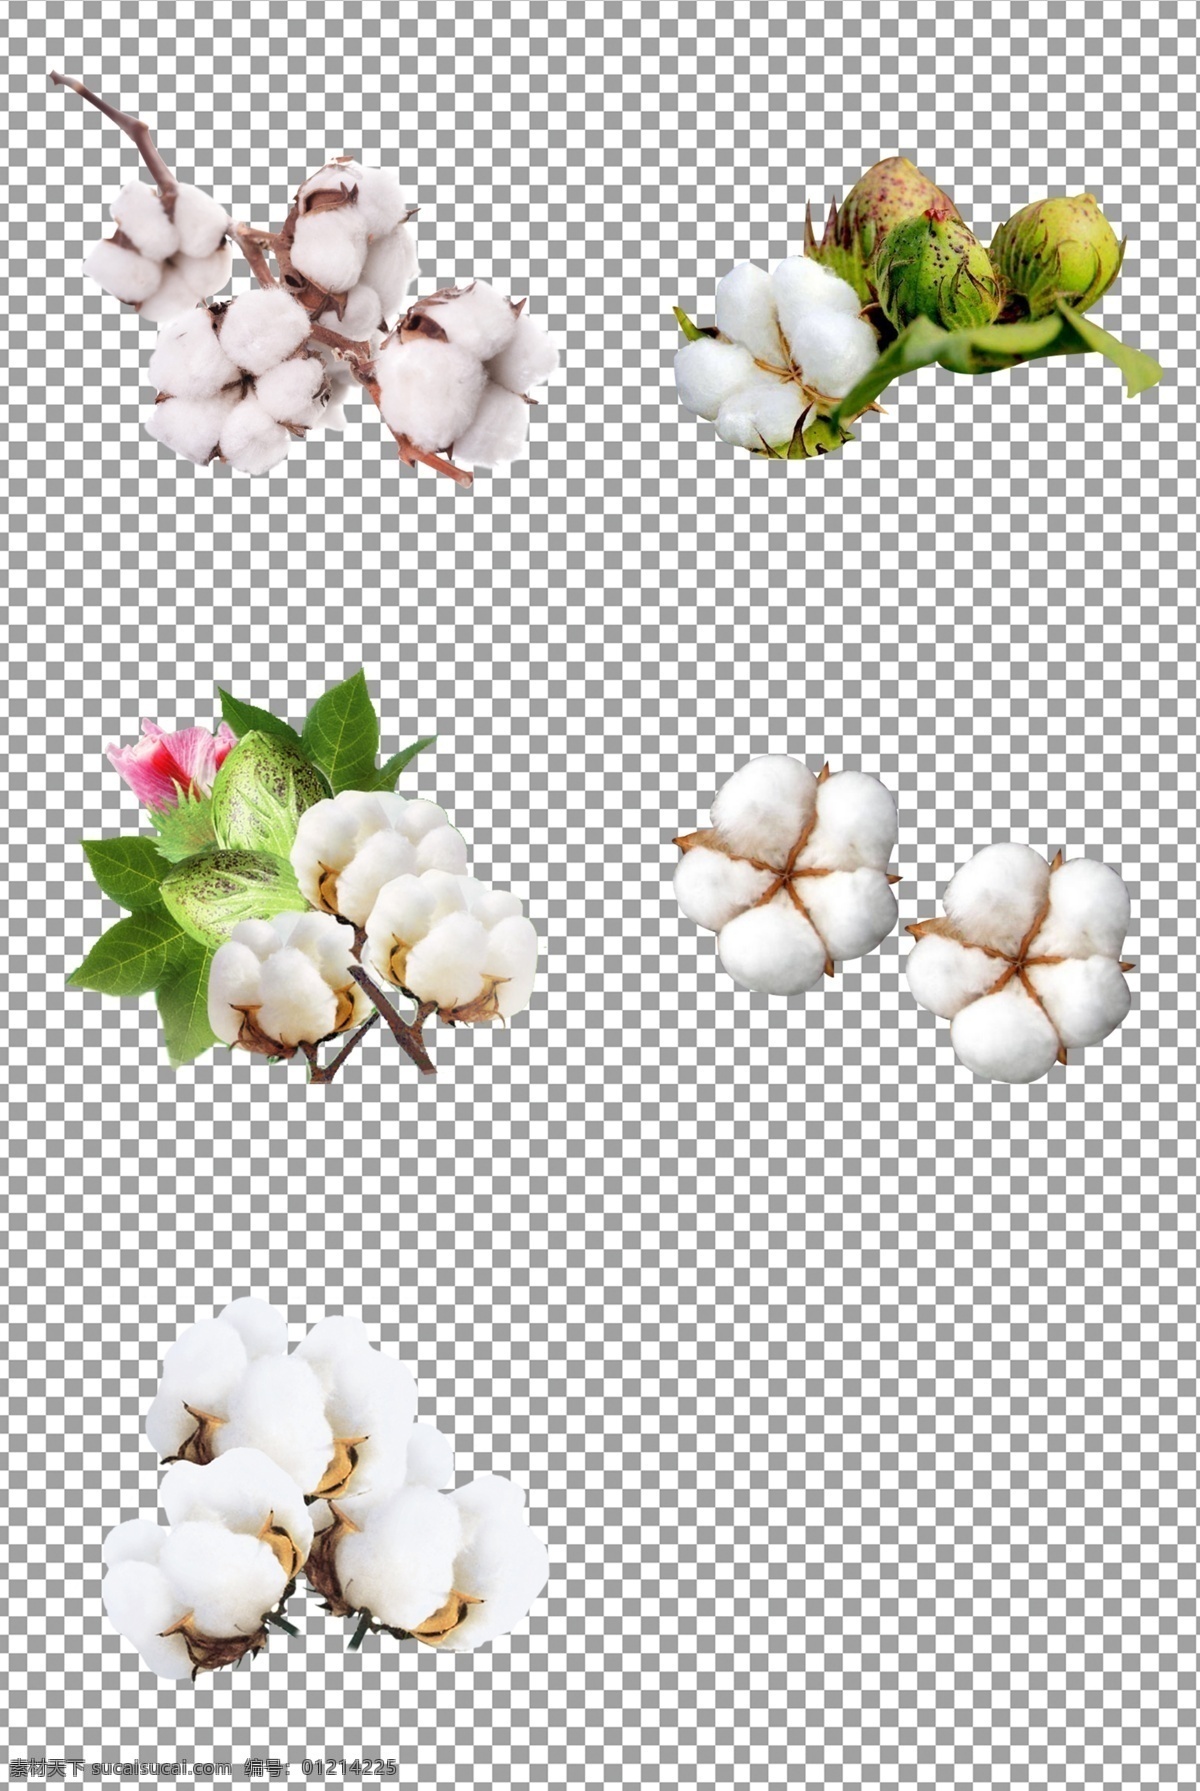 温暖棉花图片 棉花 衣物 原料 白色 温暖 棉花朵 免抠 无背景 免抠图 抠图 元素 透明 通道 png免抠图 分层